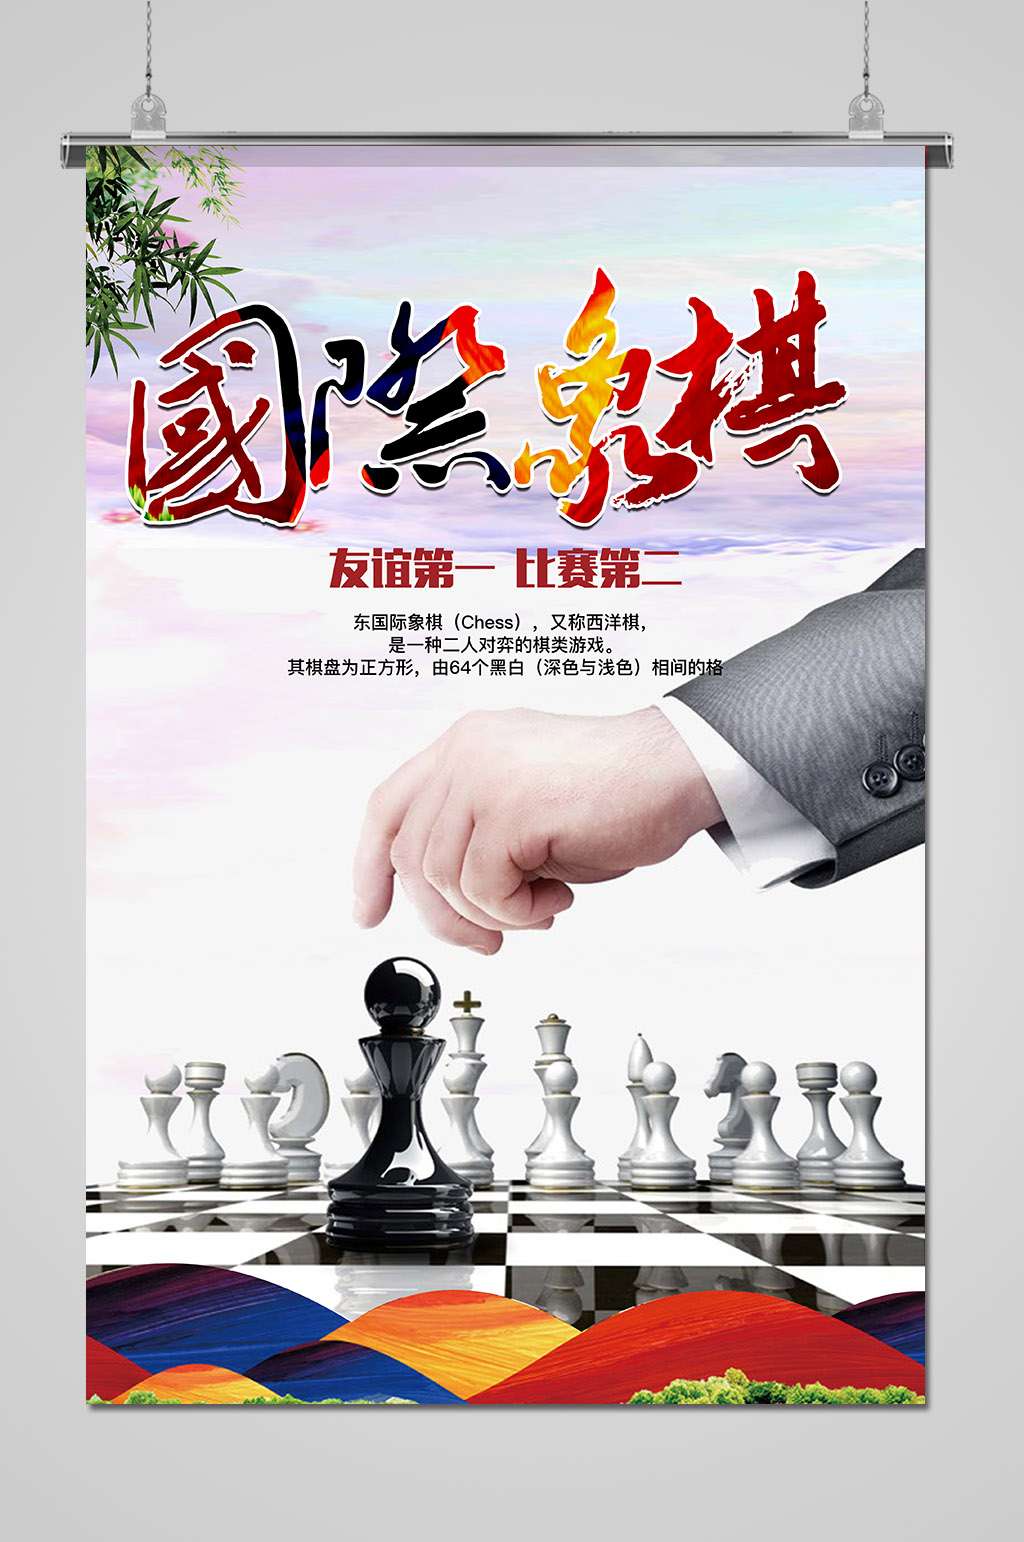 众图网独家提供棋乐无穷国际象棋海报素材免费下载,本作品是由卧龙